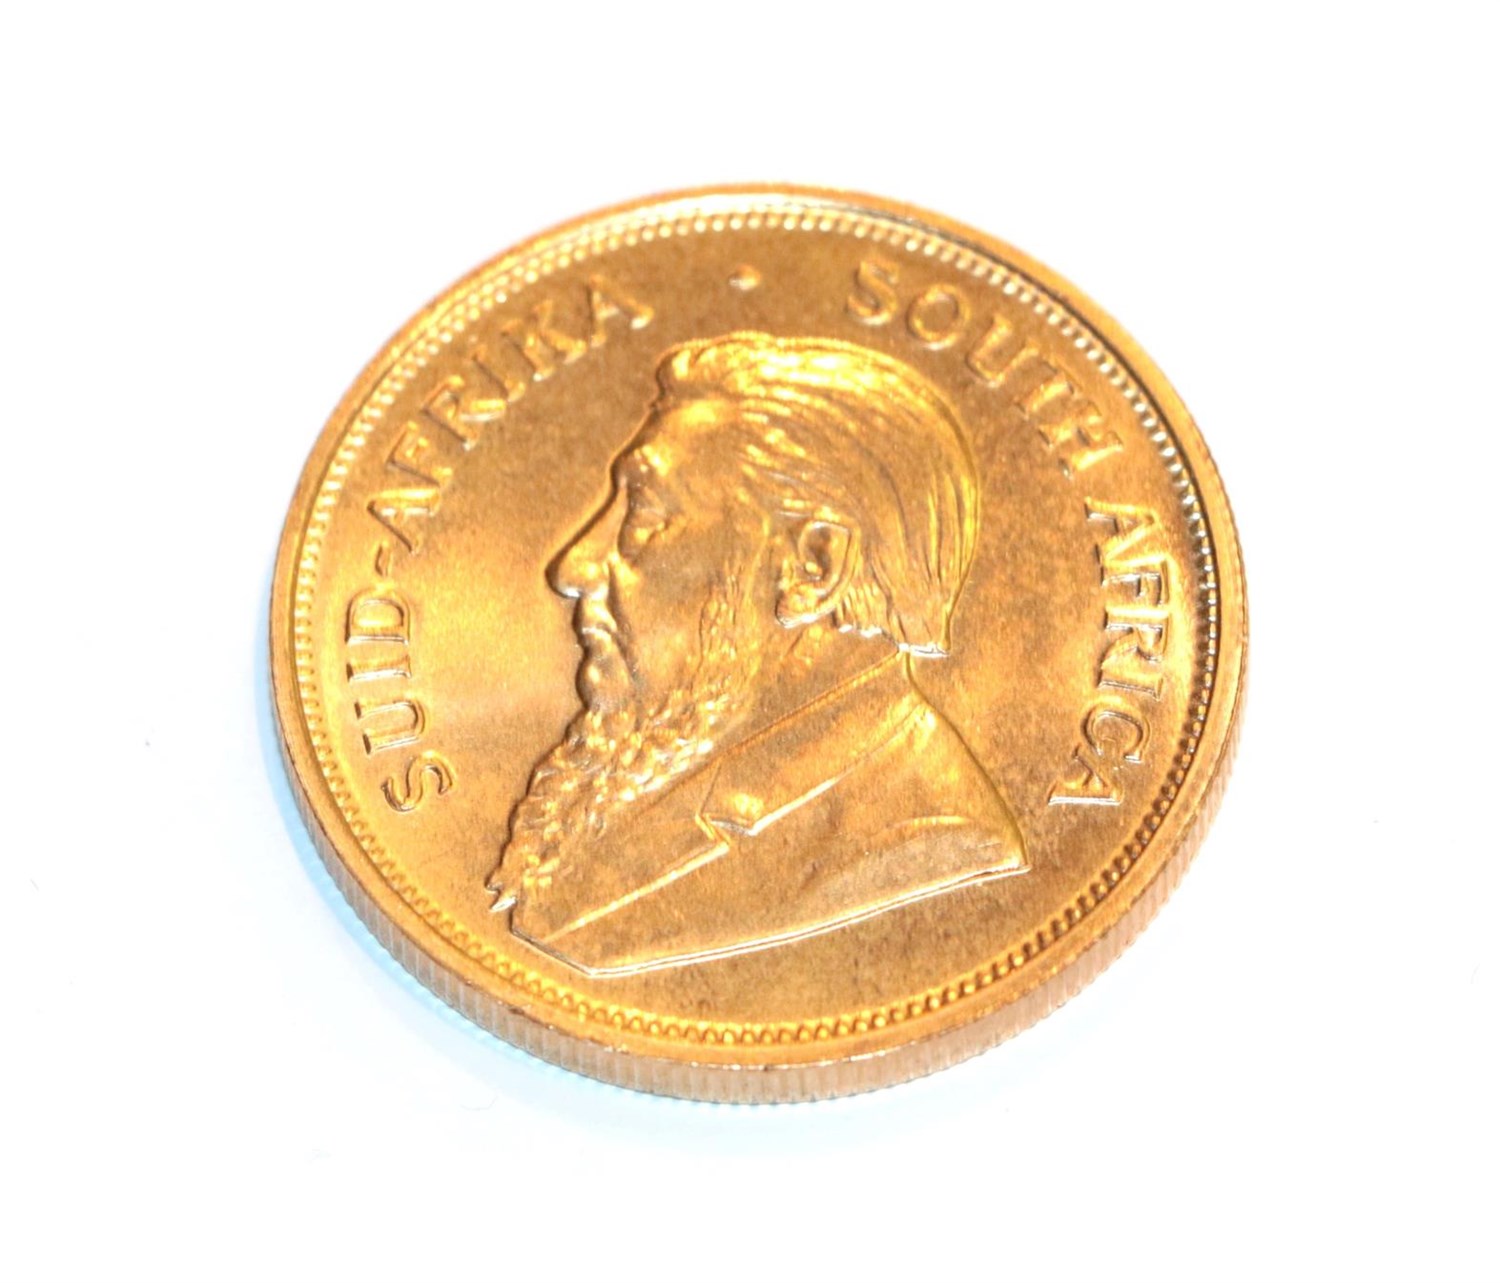 Lot 112 - South Africa, 1974 Krugerrand. 1 oz. fine gold (.999). Obv: Bust of Paul Kruger left. Rev:...